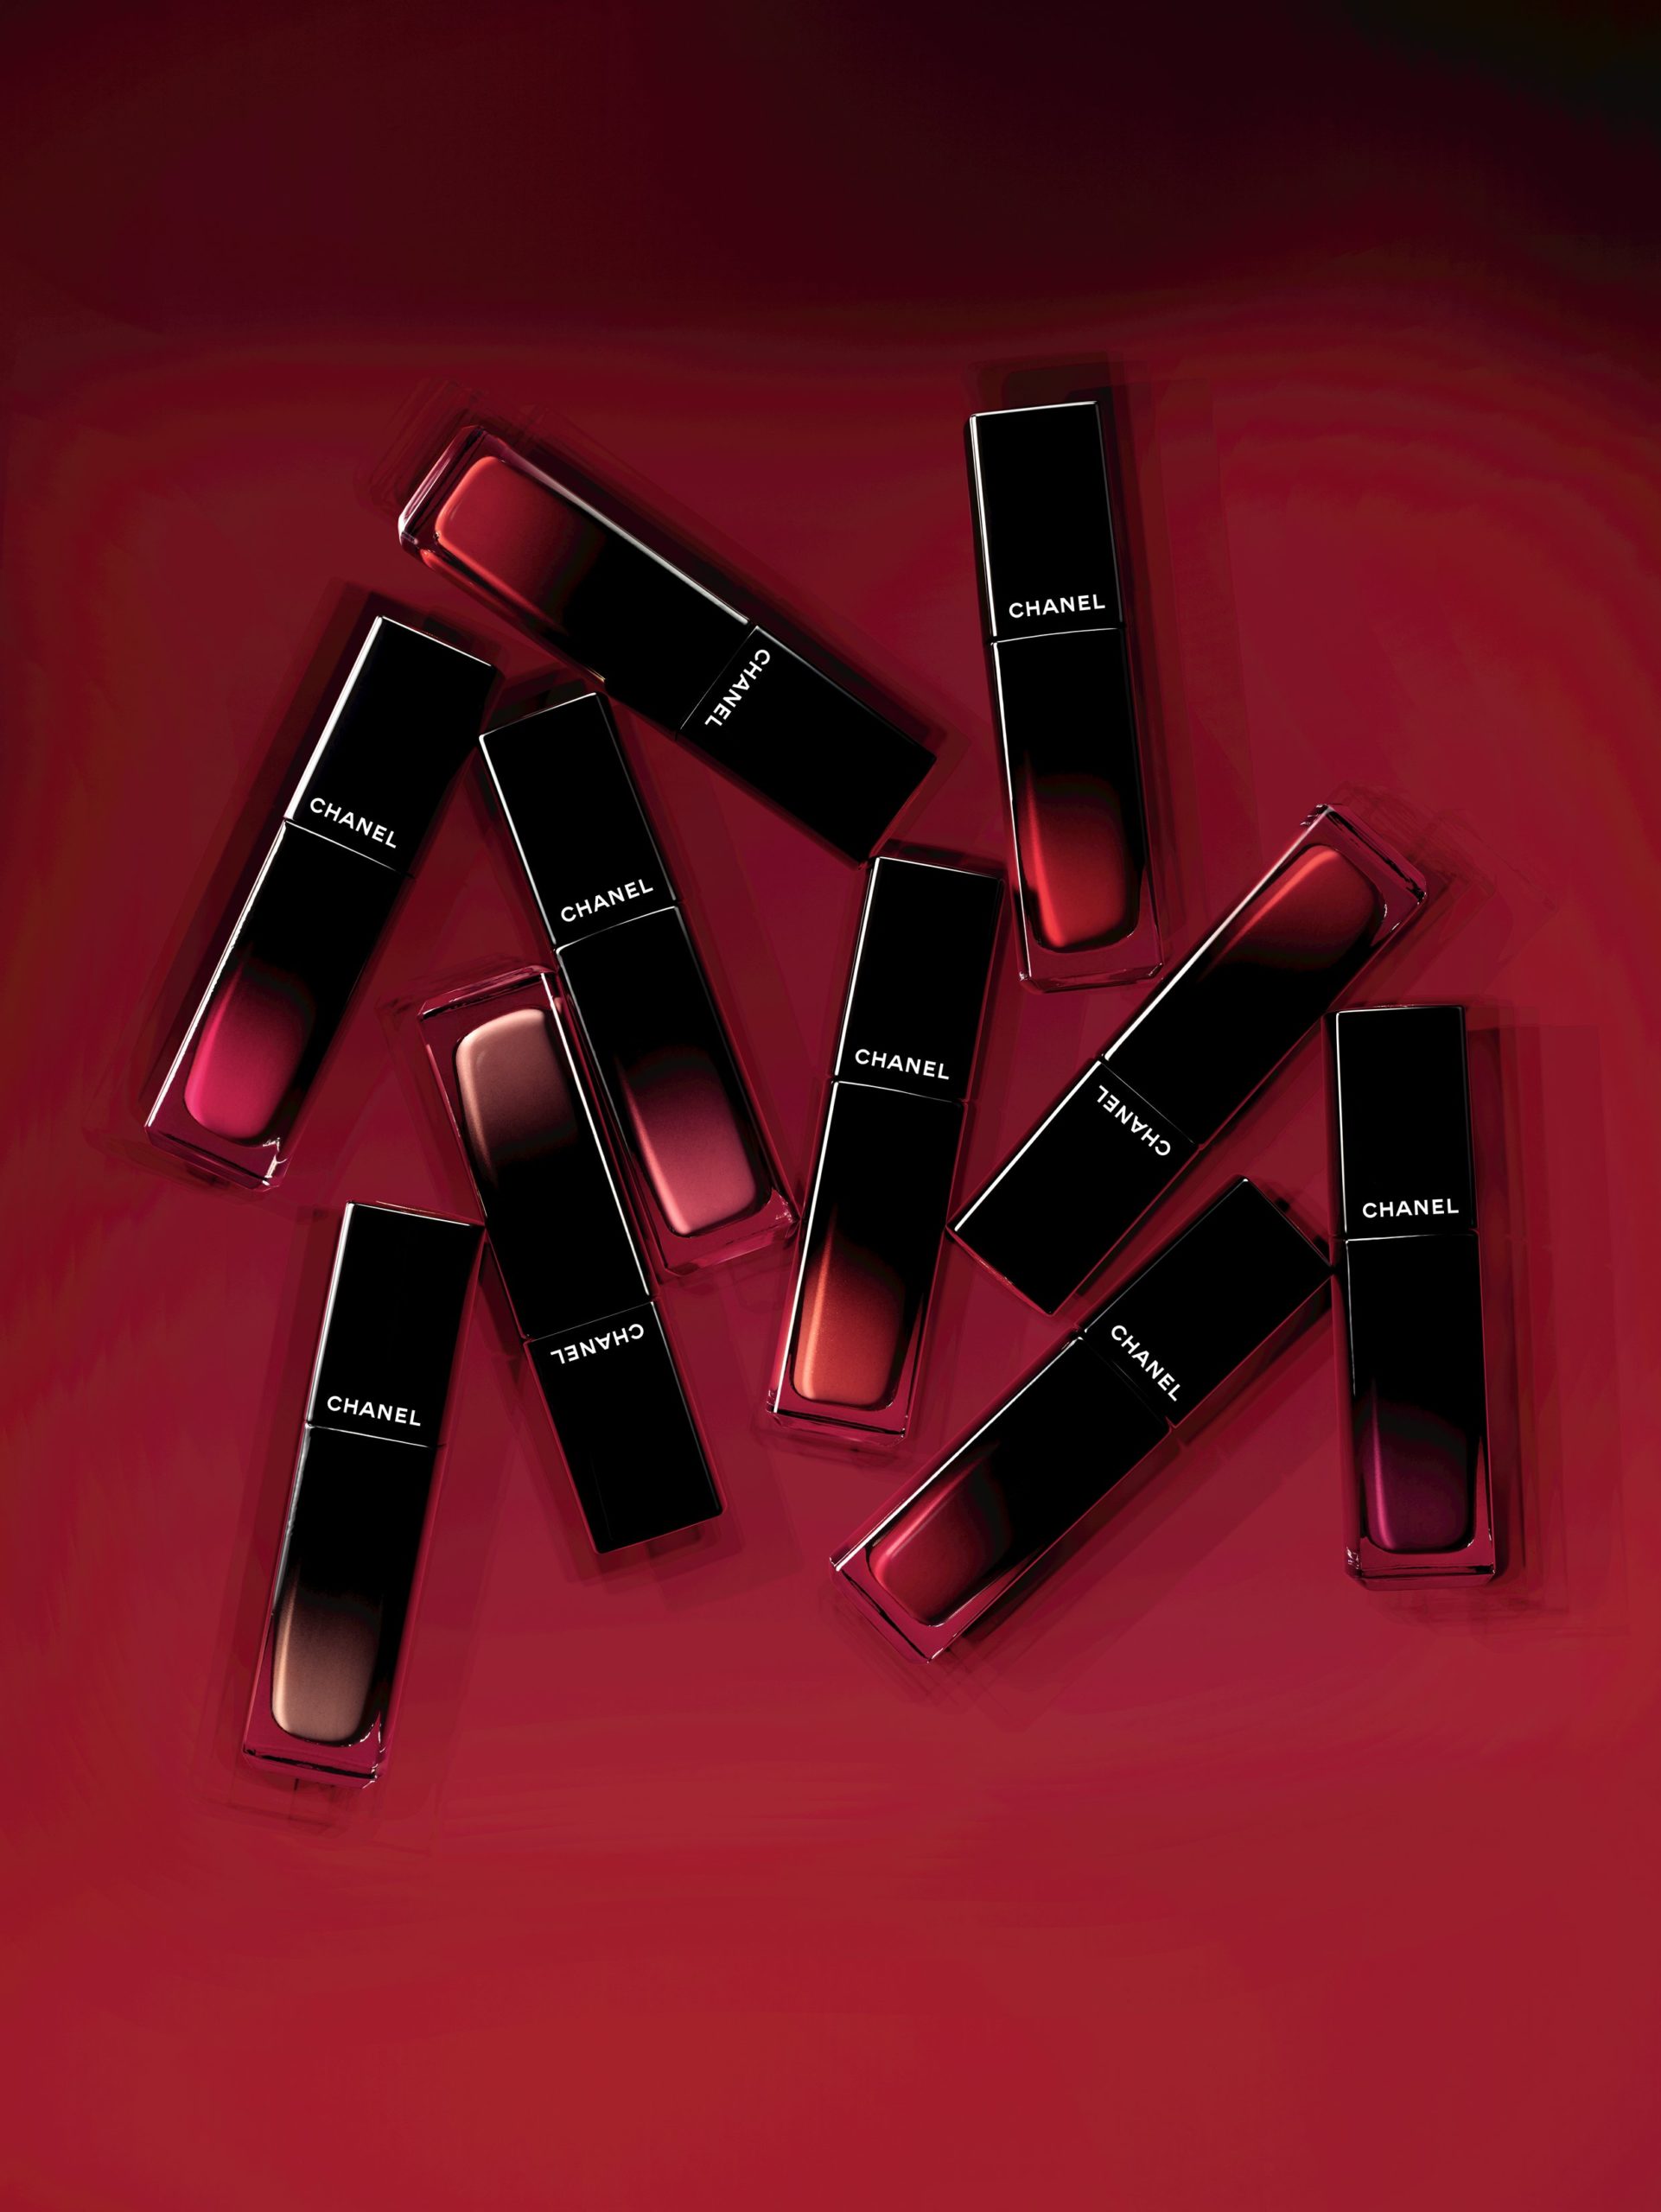 Chanel Rouge Allure Laque – Updates – Nutsaboutmakeup